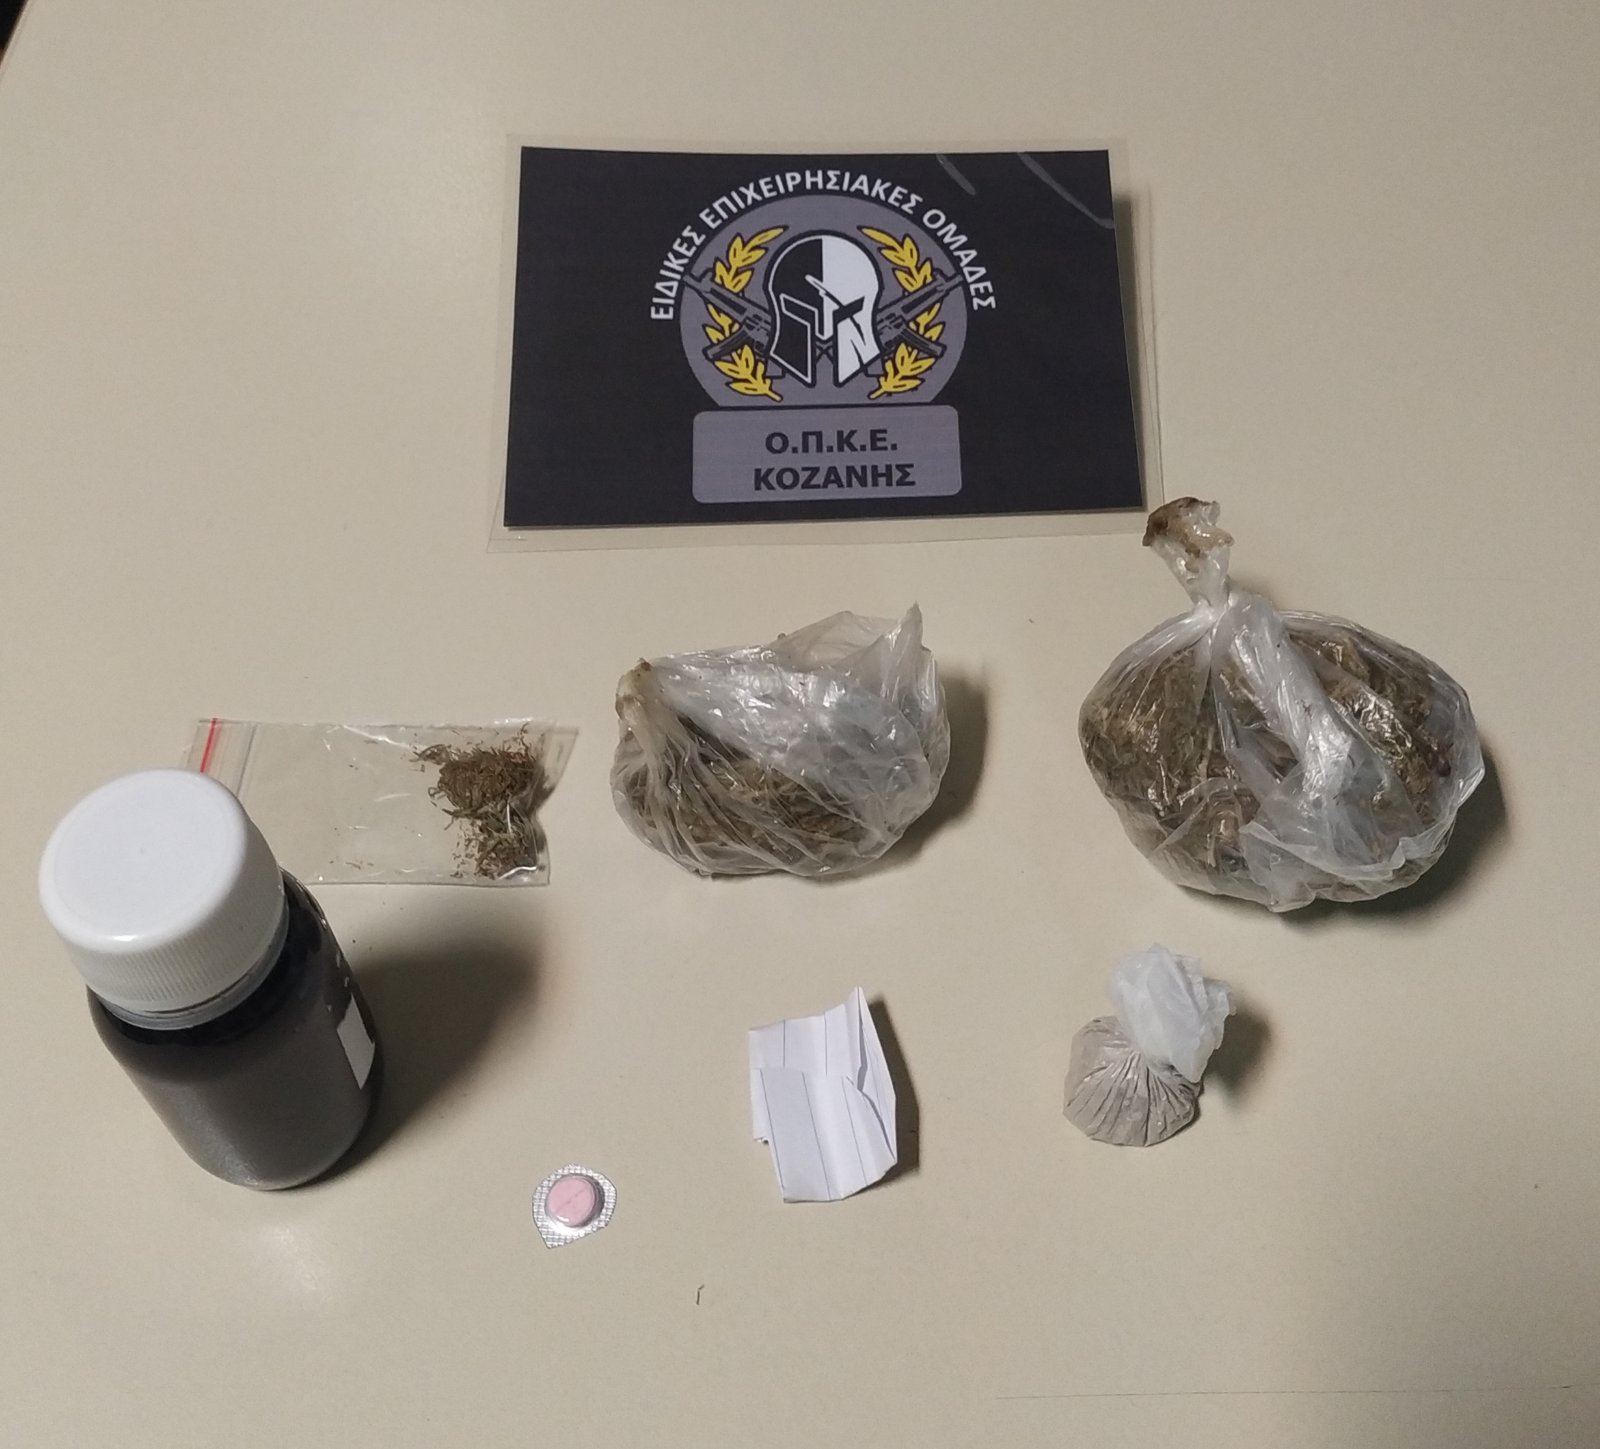 Συνελήφθησαν δύο άτομα στην Κοζάνη για κατοχή ναρκωτικών ουσιών